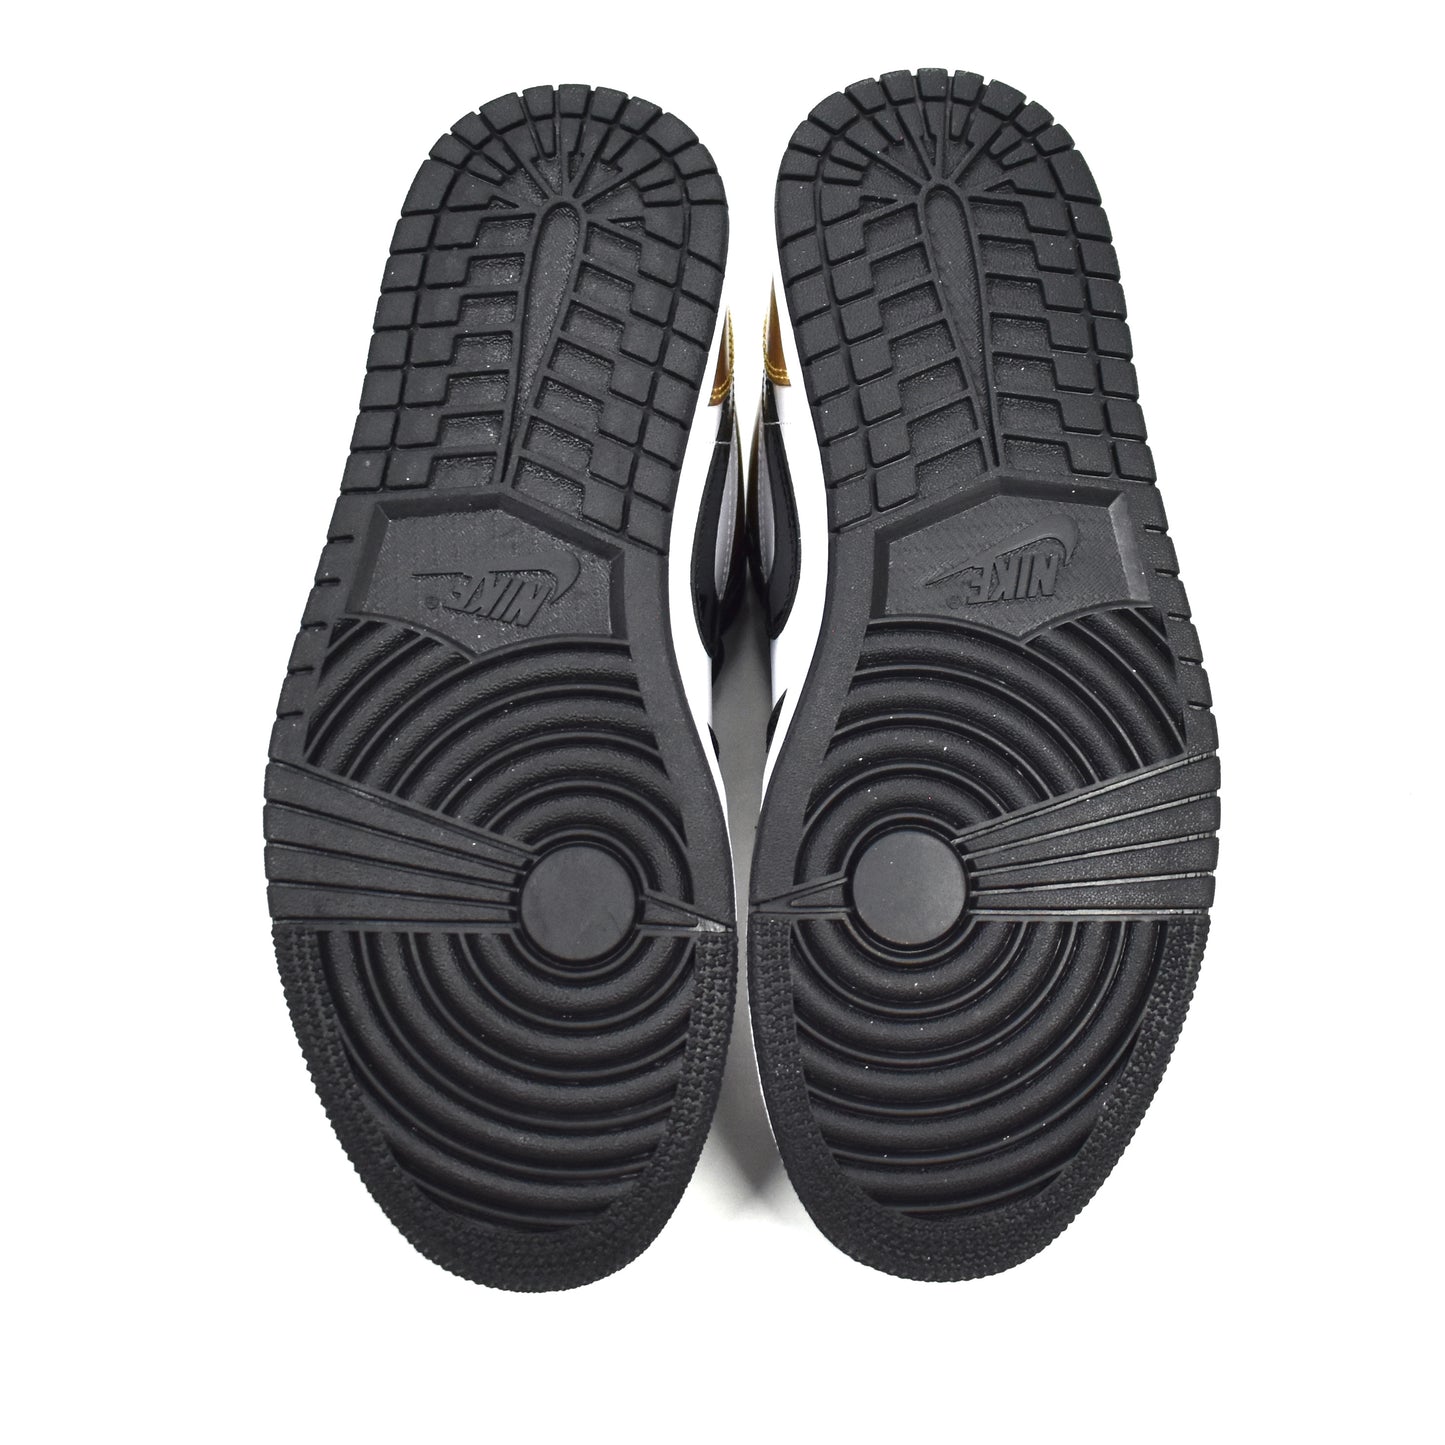 Nike - Air Jordan 1 Low Patent Gold Toe